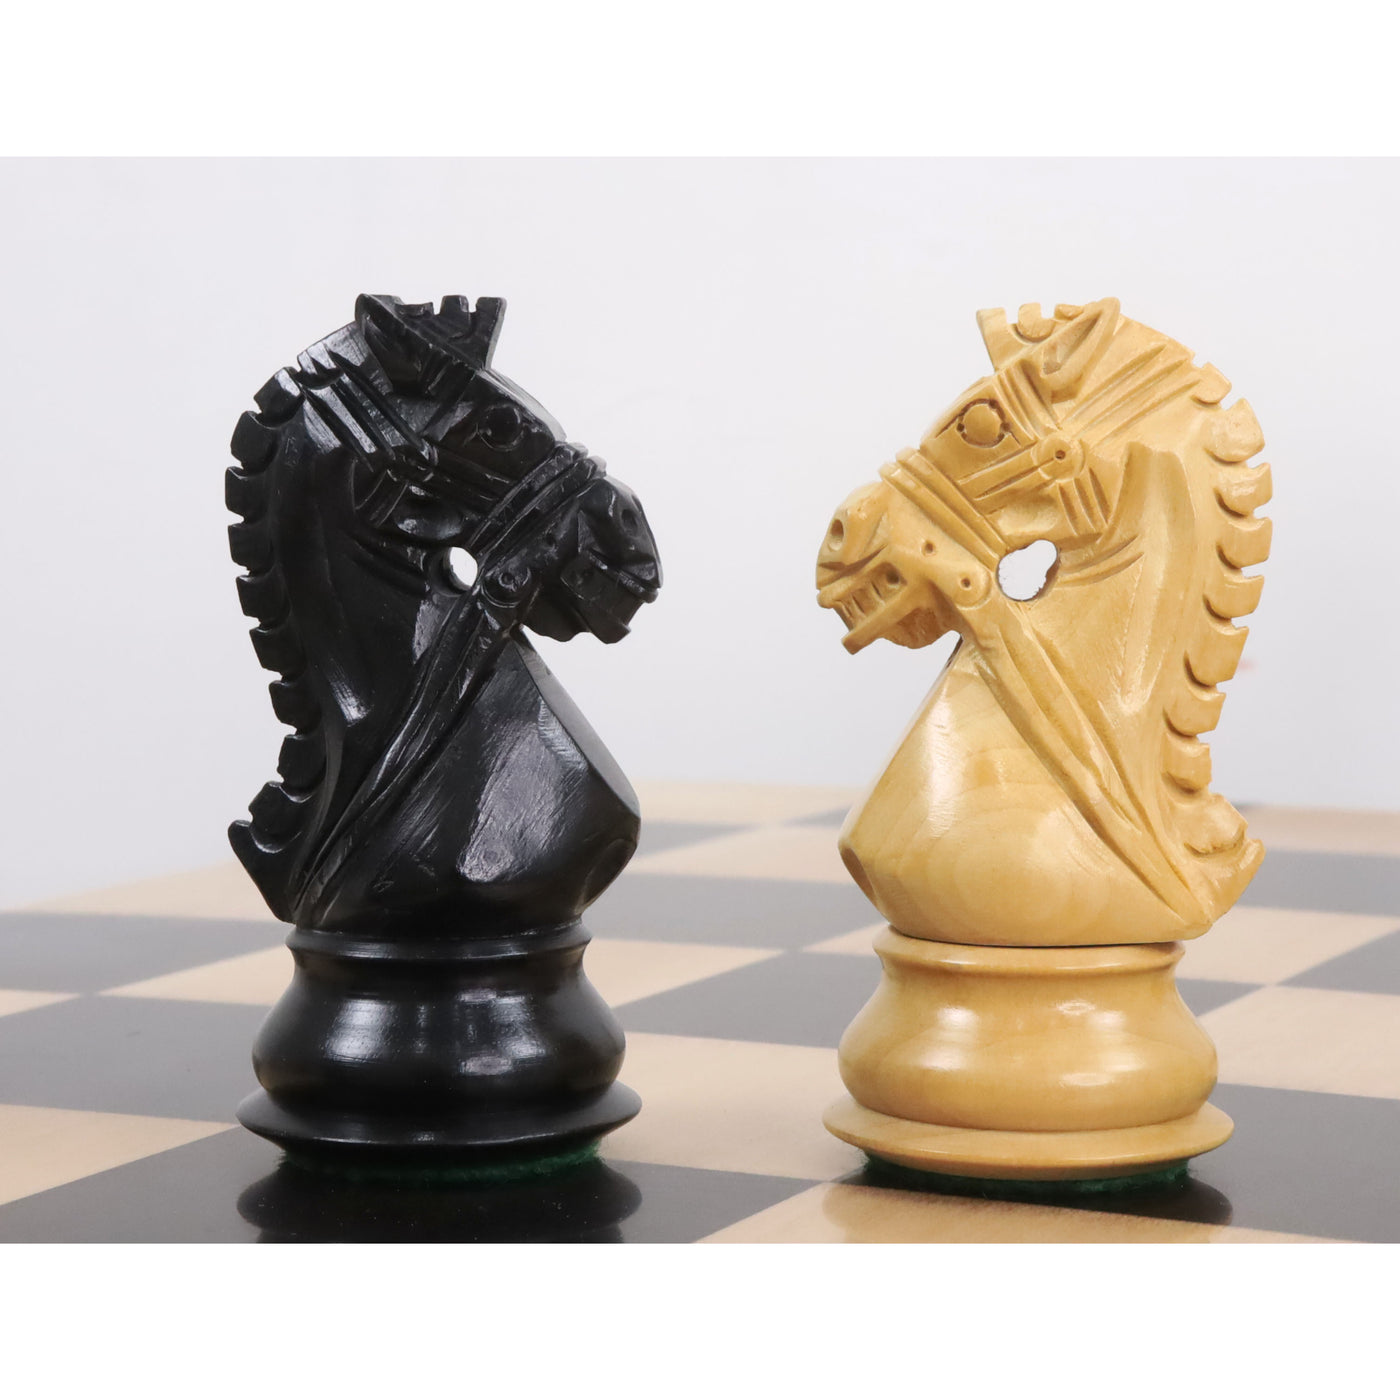 4" Bridle Staunton Luxury Chess Pieces Only set - Ebony Wood & Boxwood